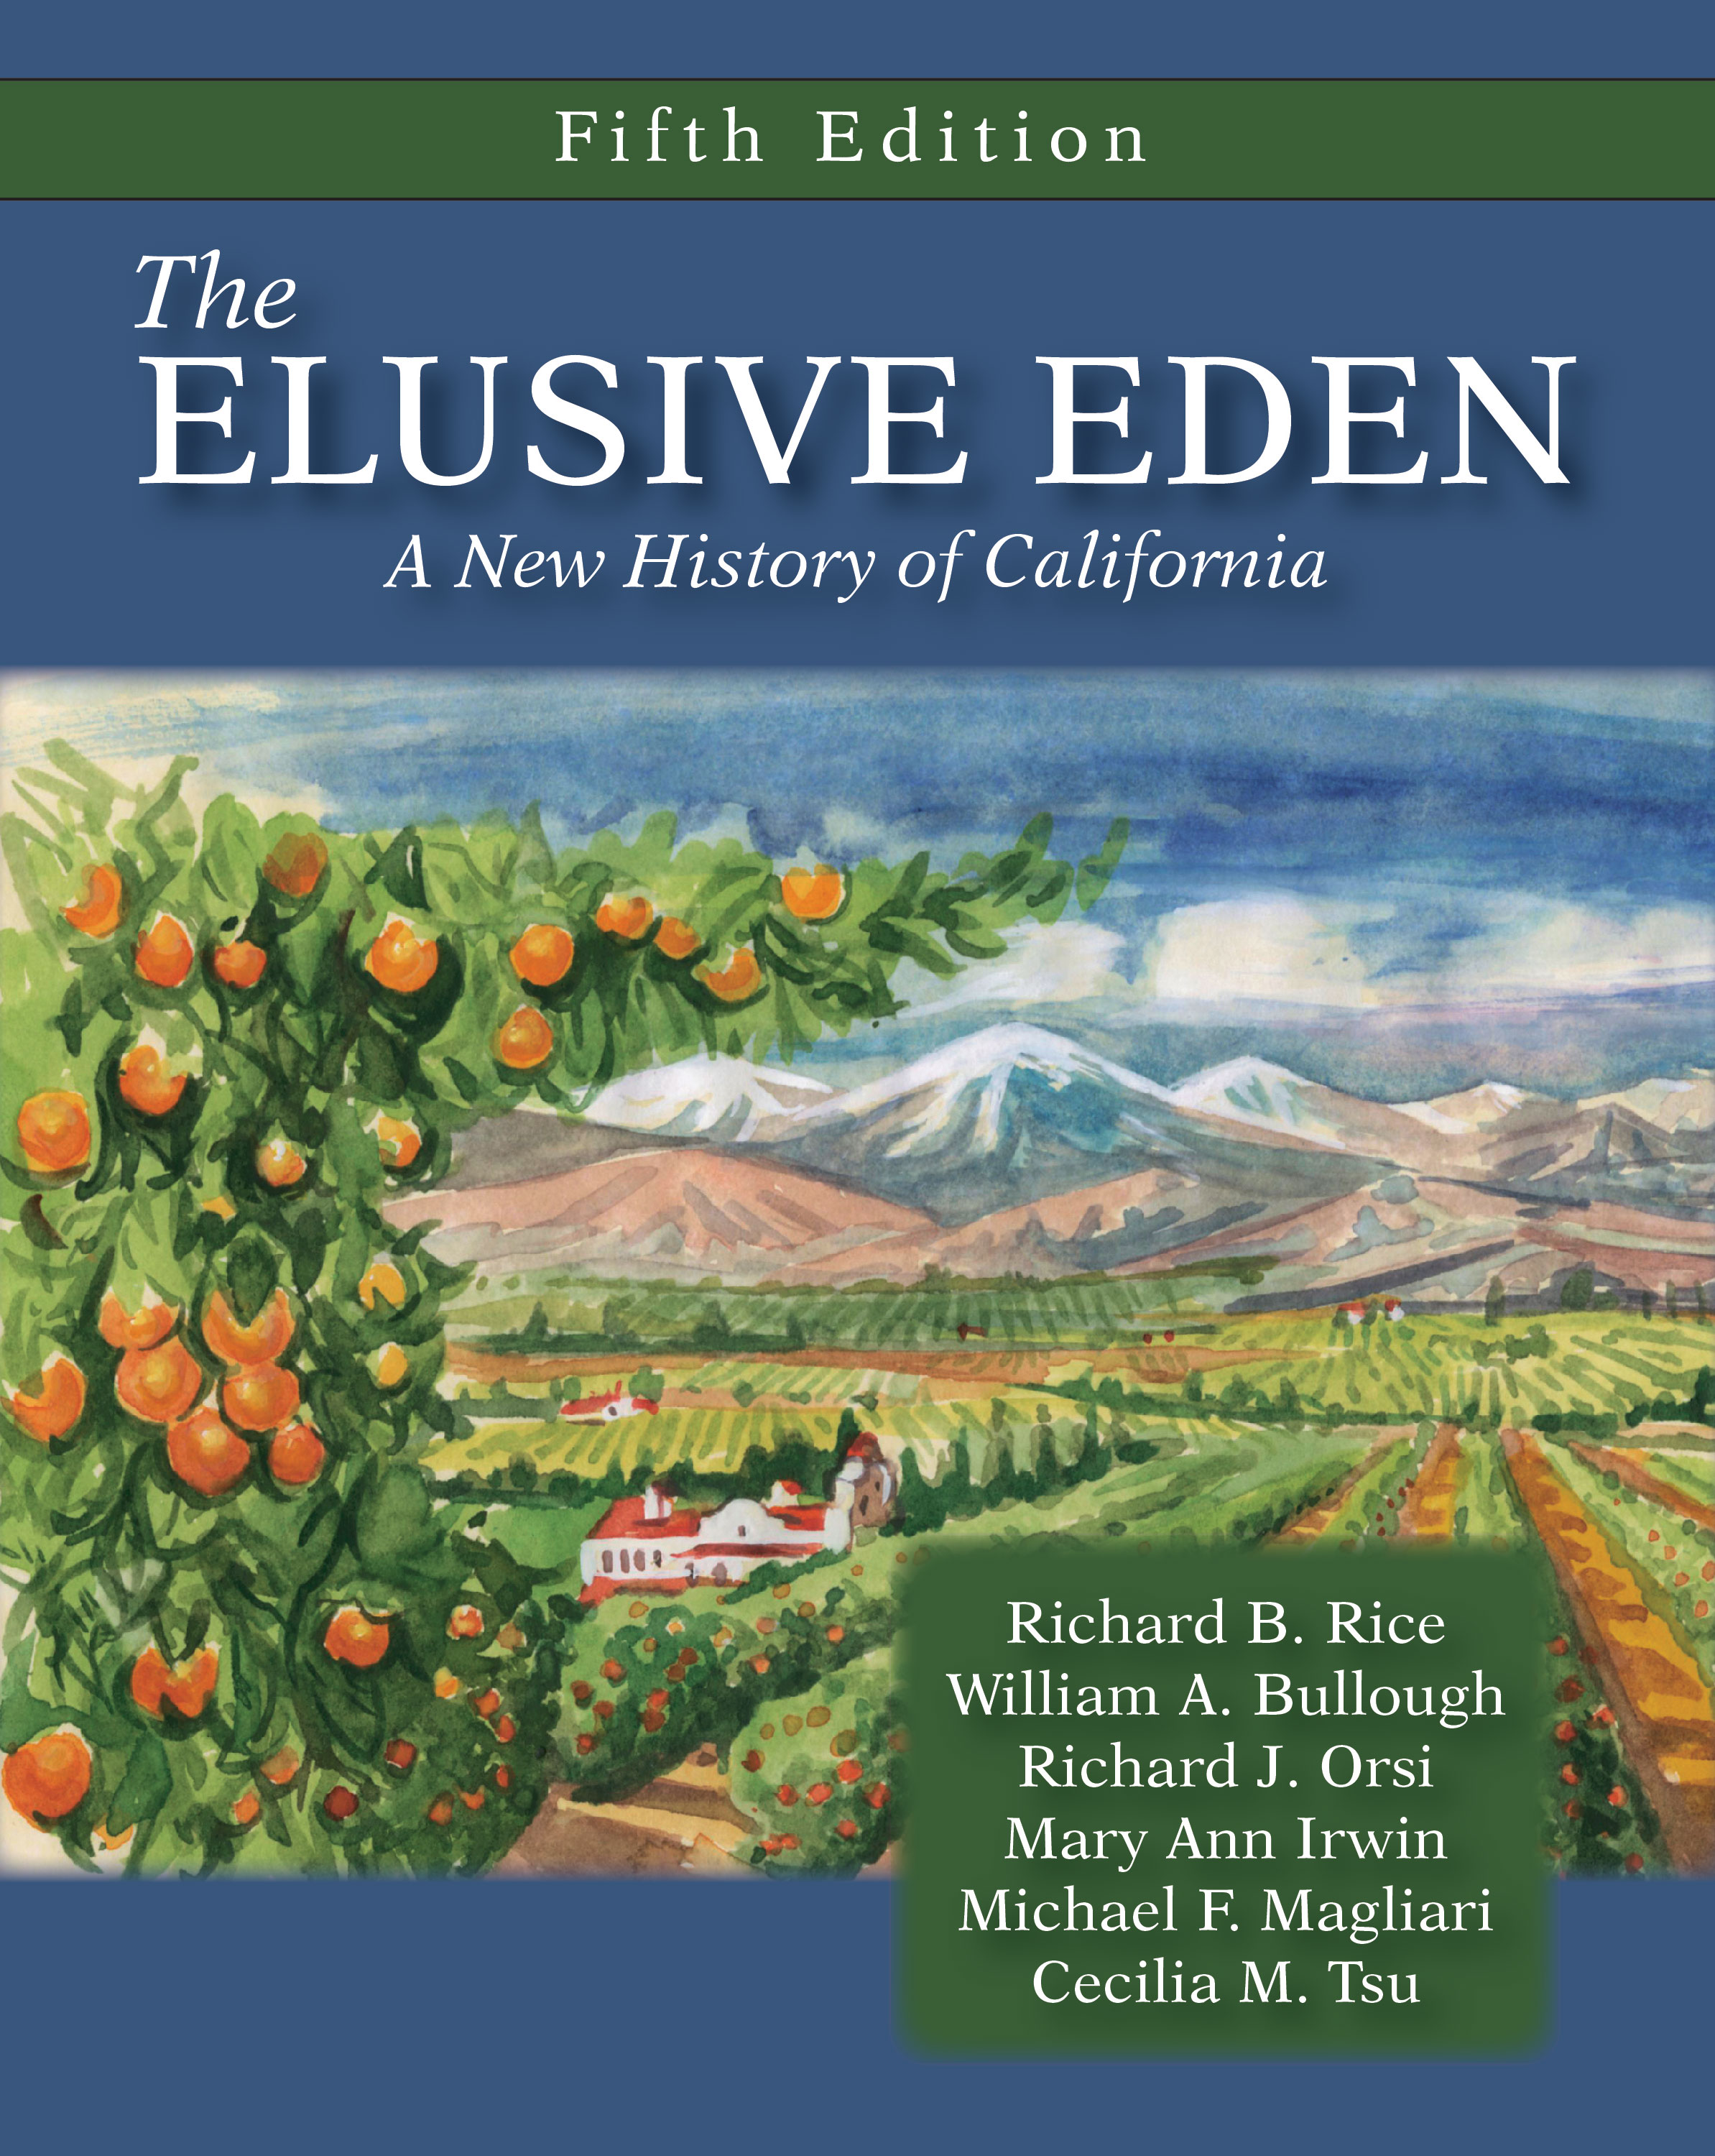 The Elusive Eden: A New History of California by Richard B. Rice, William A. Bullough, Richard J. Orsi, Mary Ann  Irwin, Michael F. Magliari, Cecilia M. Tsu